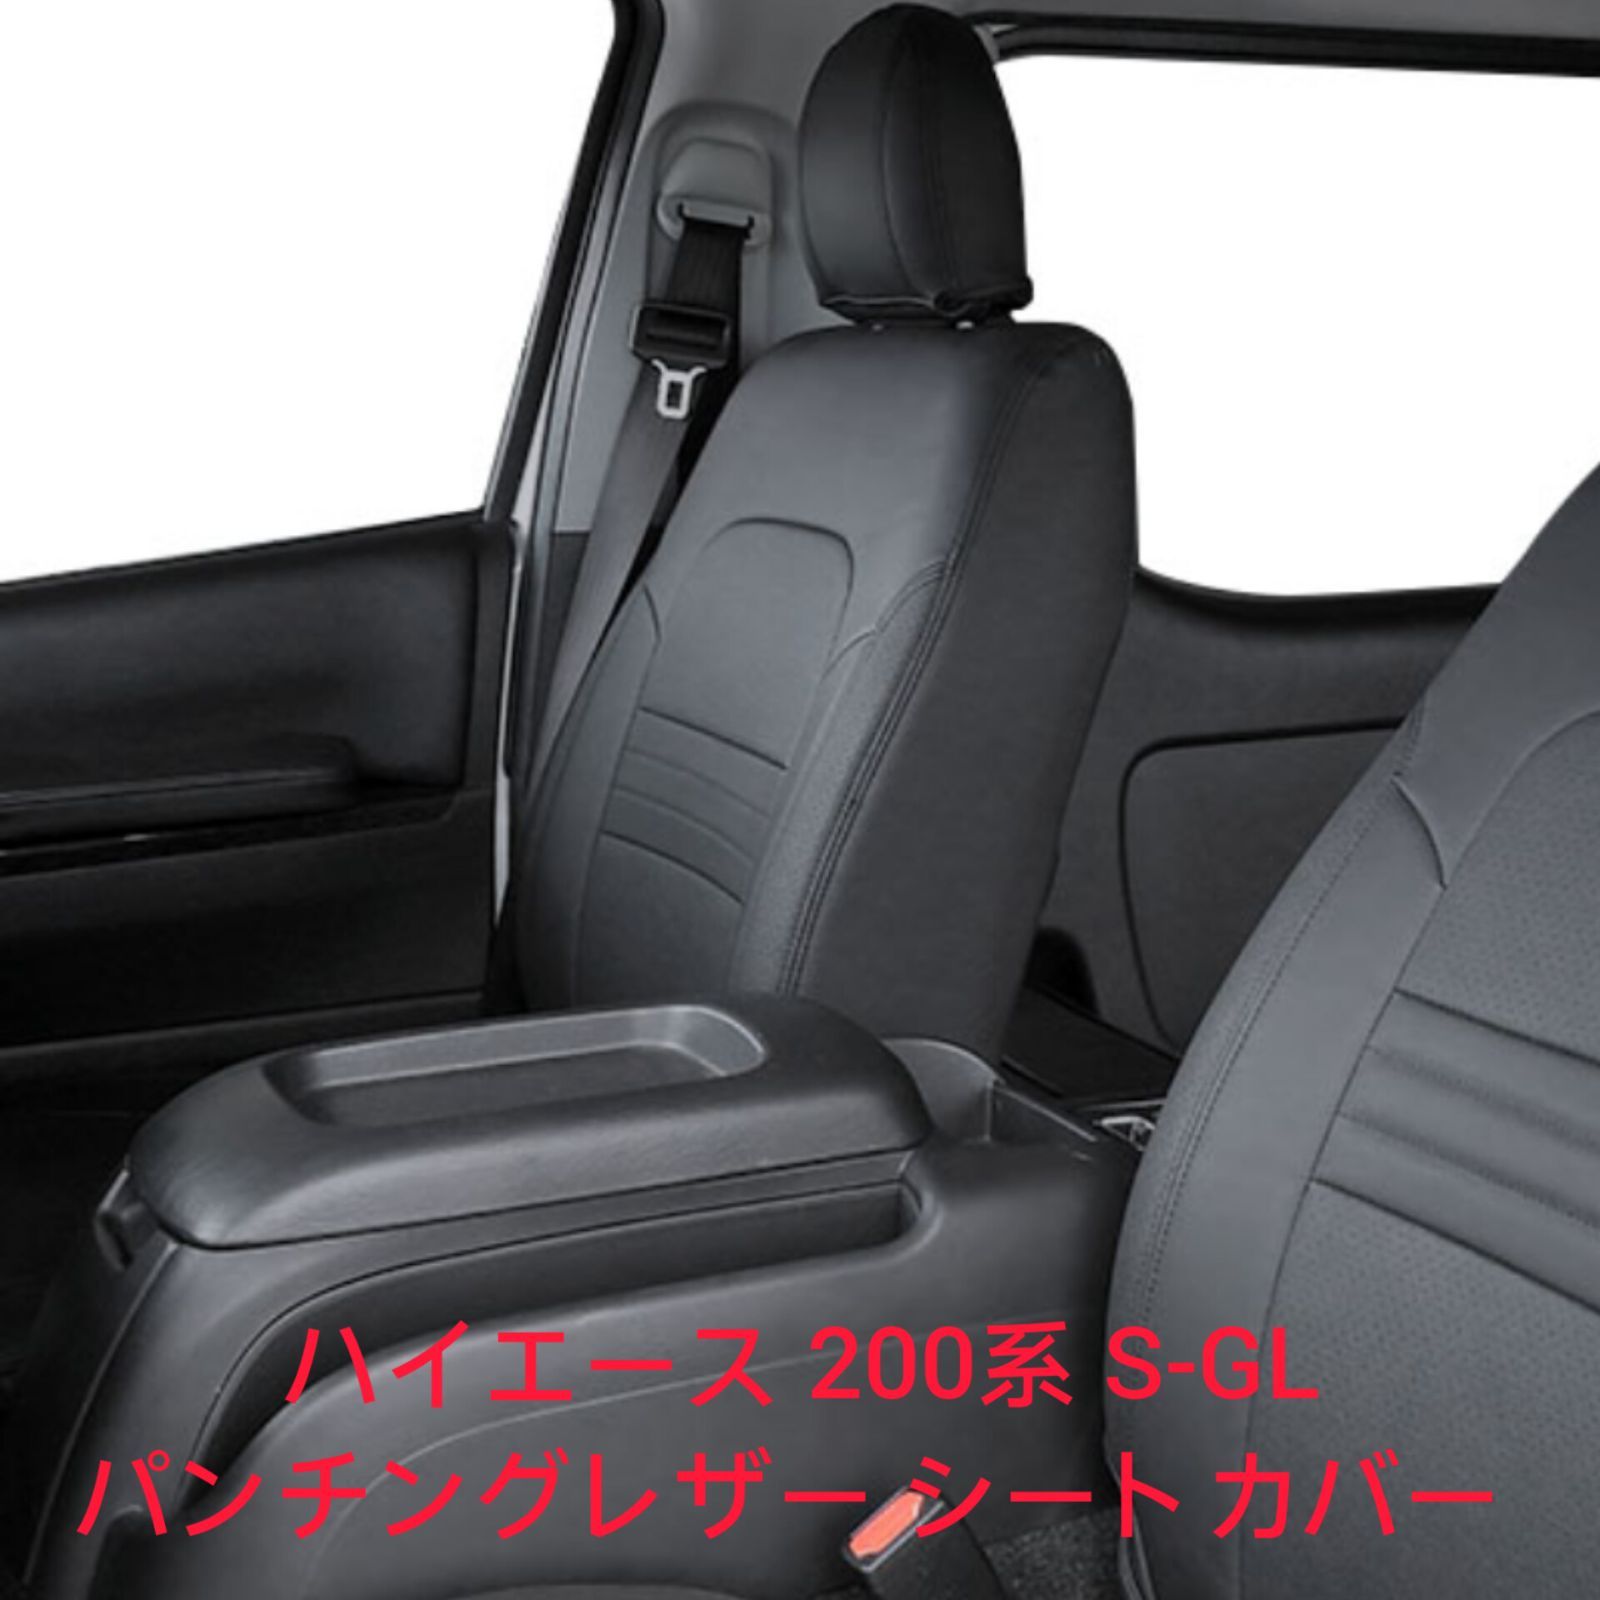 特価大得価PVC レザー シートカバー レジアスエースバン 200系 6人乗り ブラック パンチング トヨタ フルセット(1列目2列目) 内装 座席カバー トヨタ用